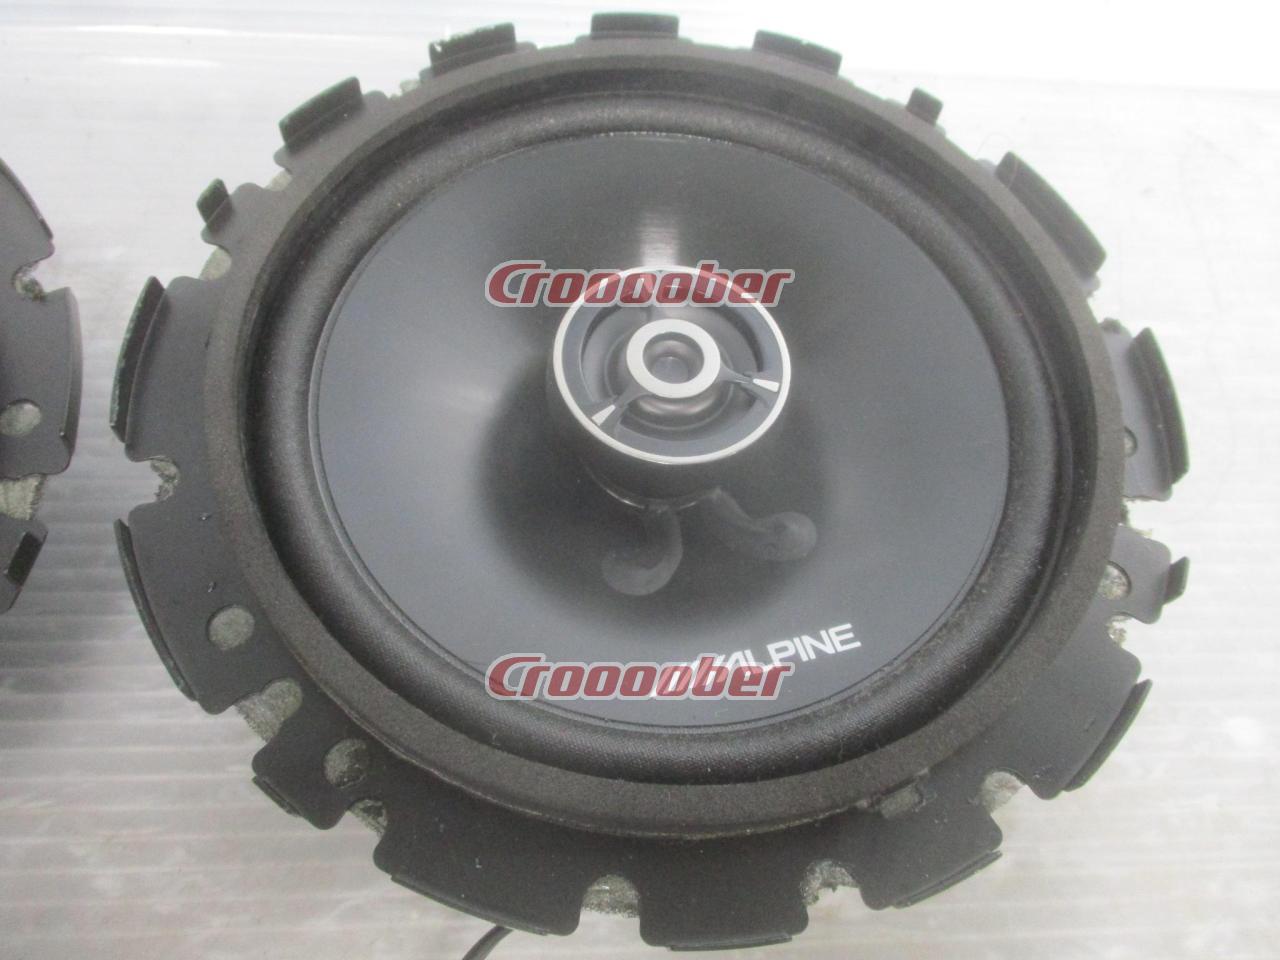 ALPINE STE-G160C | Implantable Speakers | Croooober